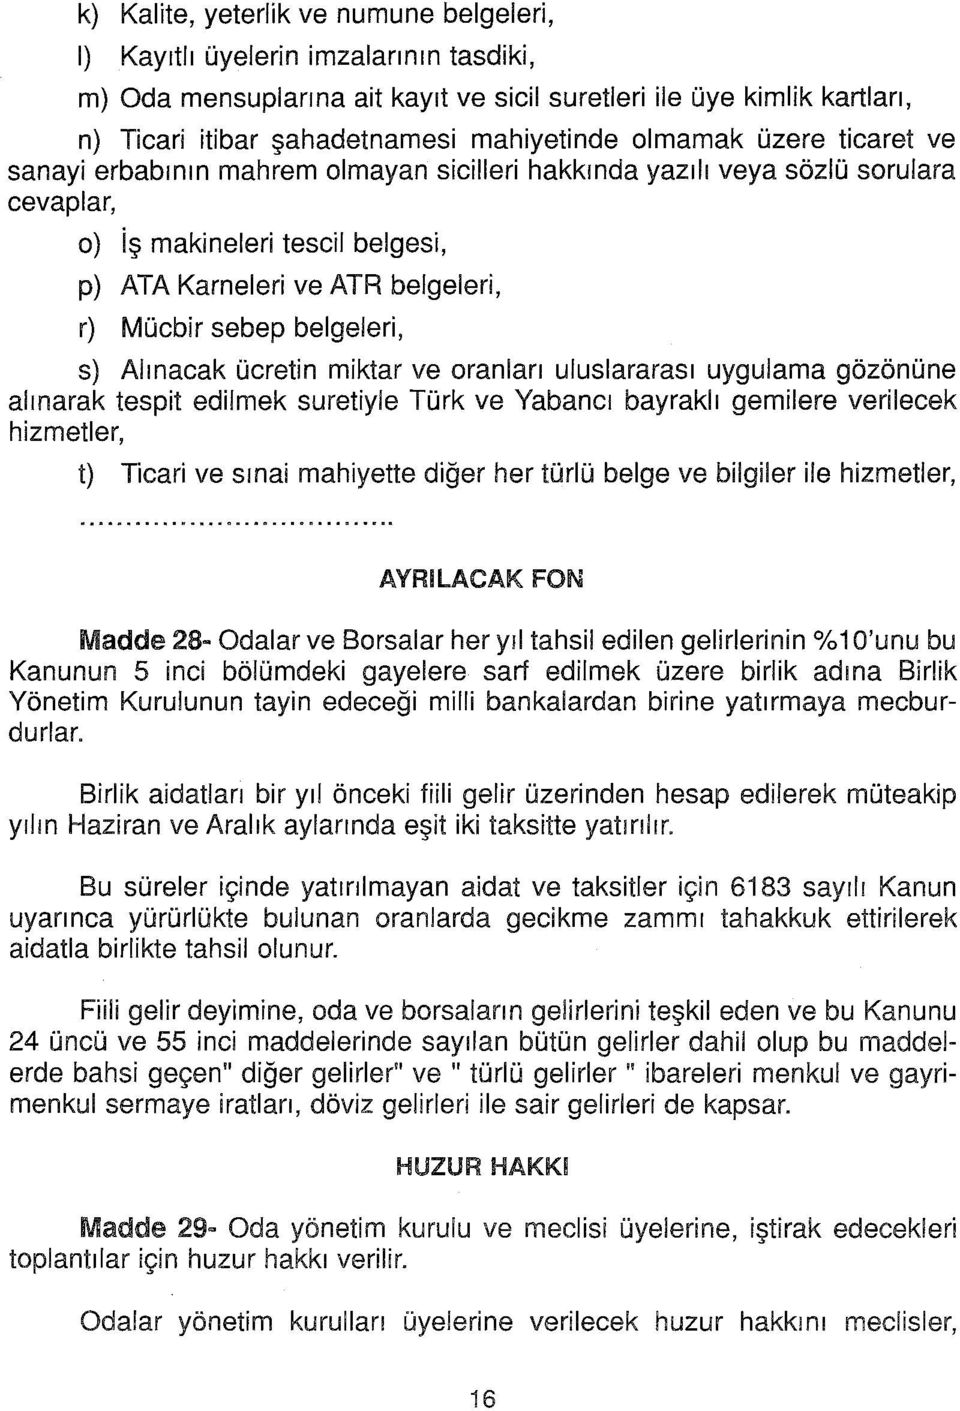 belgeleri, s) Alınacak ücretin miktar ve oranları uluslararası uygulama gözönüne alınarak tespit edilmek suretiyle Türk ve Yabancı bayraklı gemilere verilecek hizmetler, t) Ticari ve sınai mahiyette